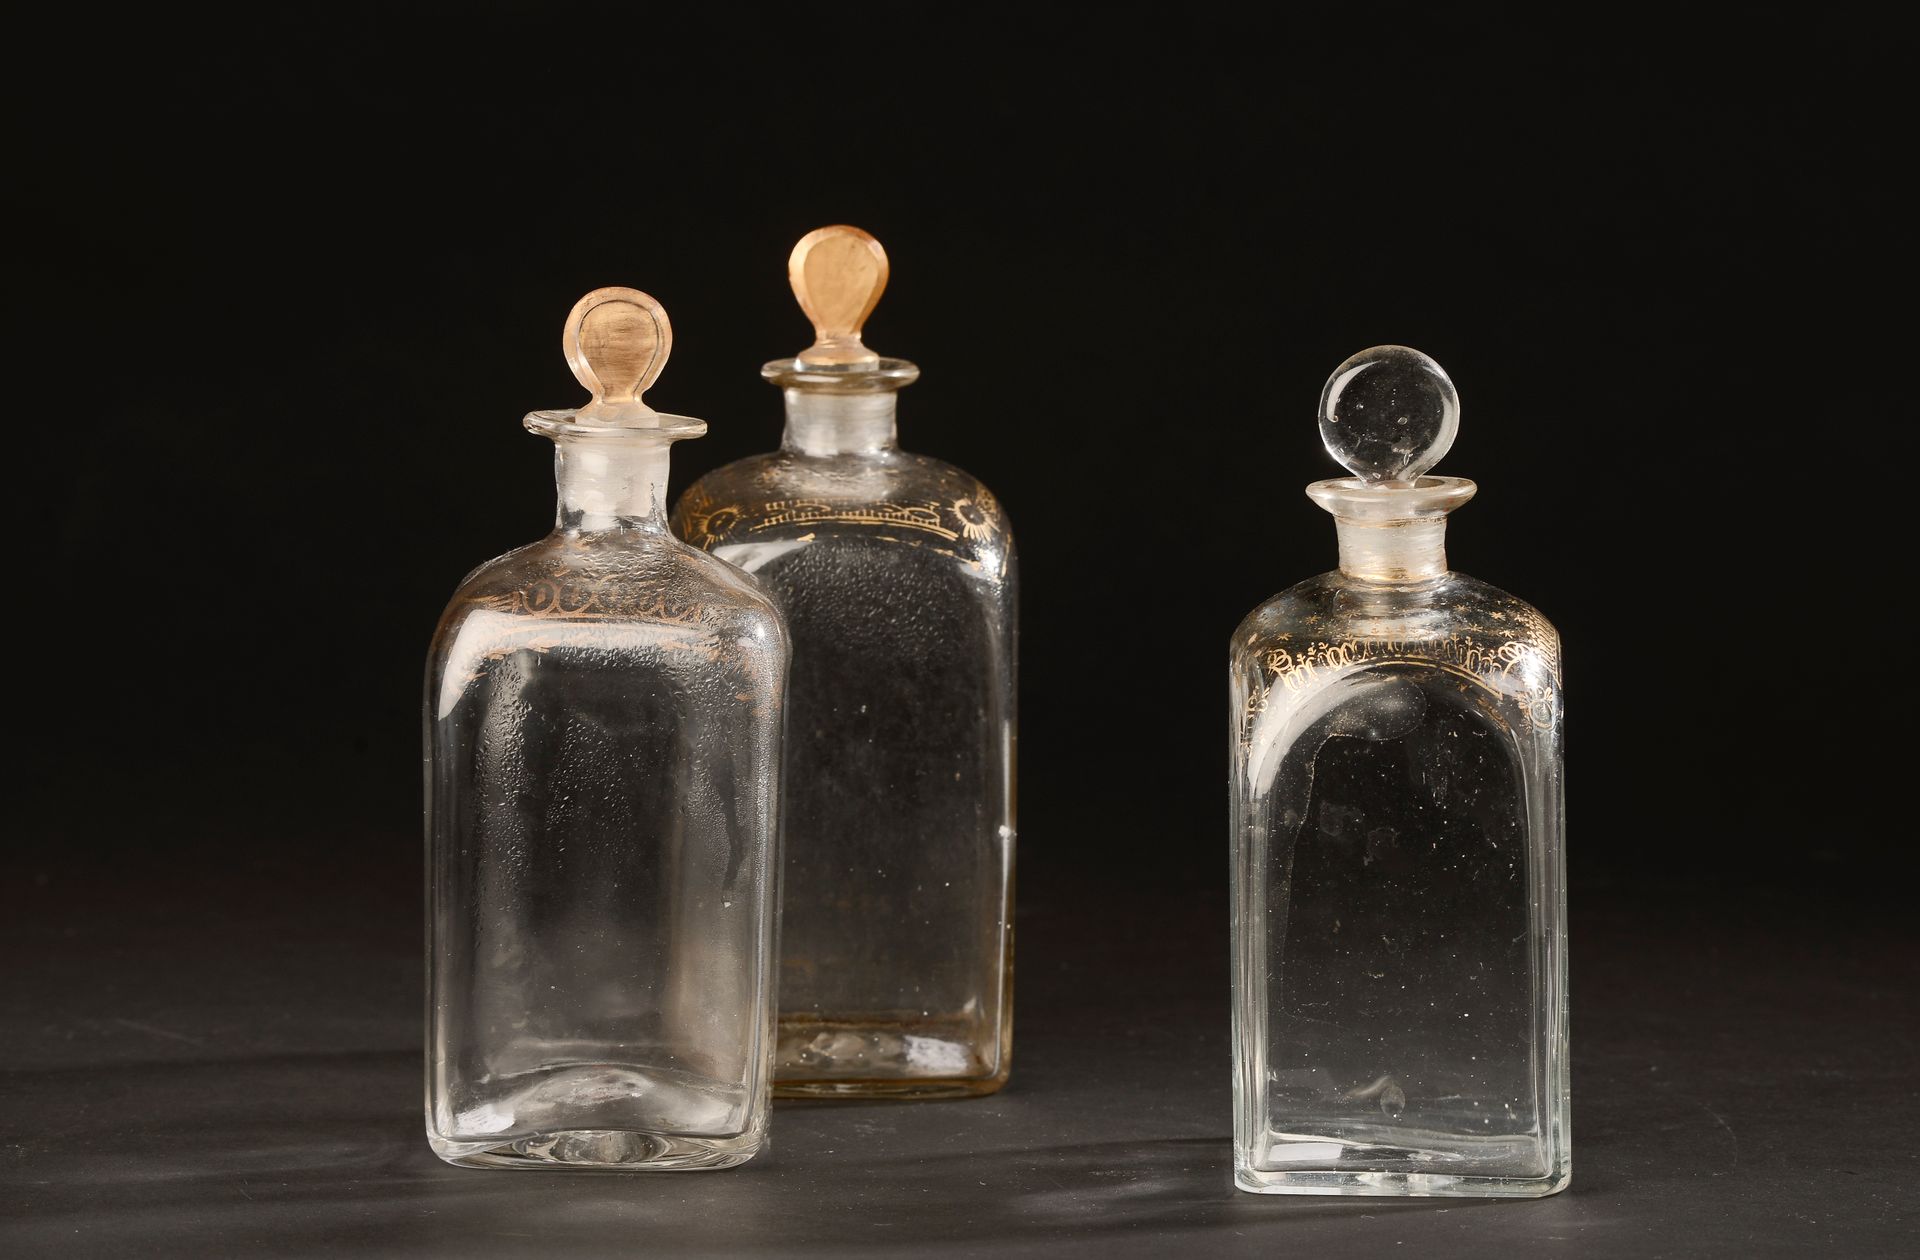 Null 三件吹制的方形玻璃瓶，肩部有镀金处理（三种尺寸，据说有瓶塞，镀金有磨损，一角有霜）。

18世纪。

高度17至18.5厘米